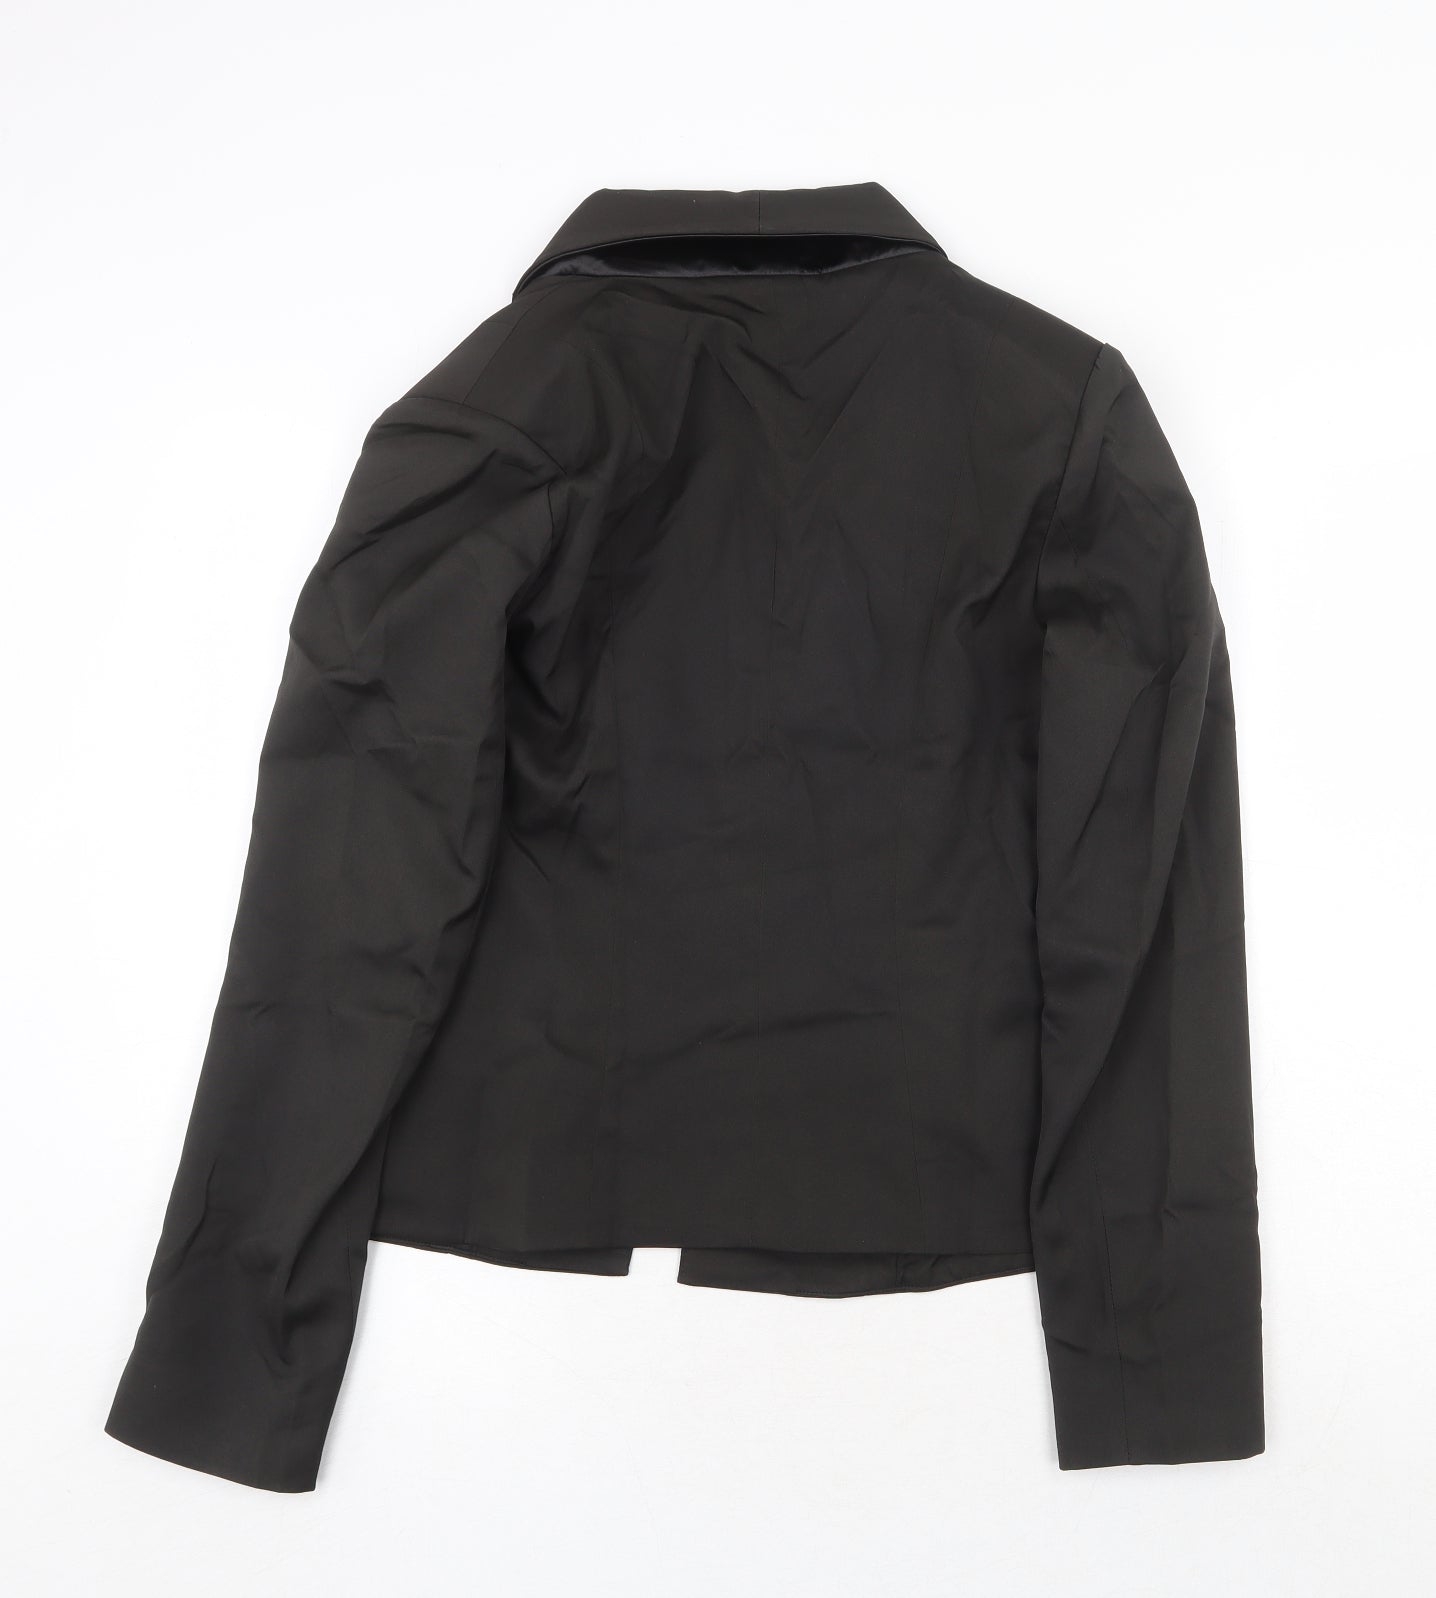 PRETTYLITTLETHING Womens Black Jacket Blazer Size 12 Hook & Eye